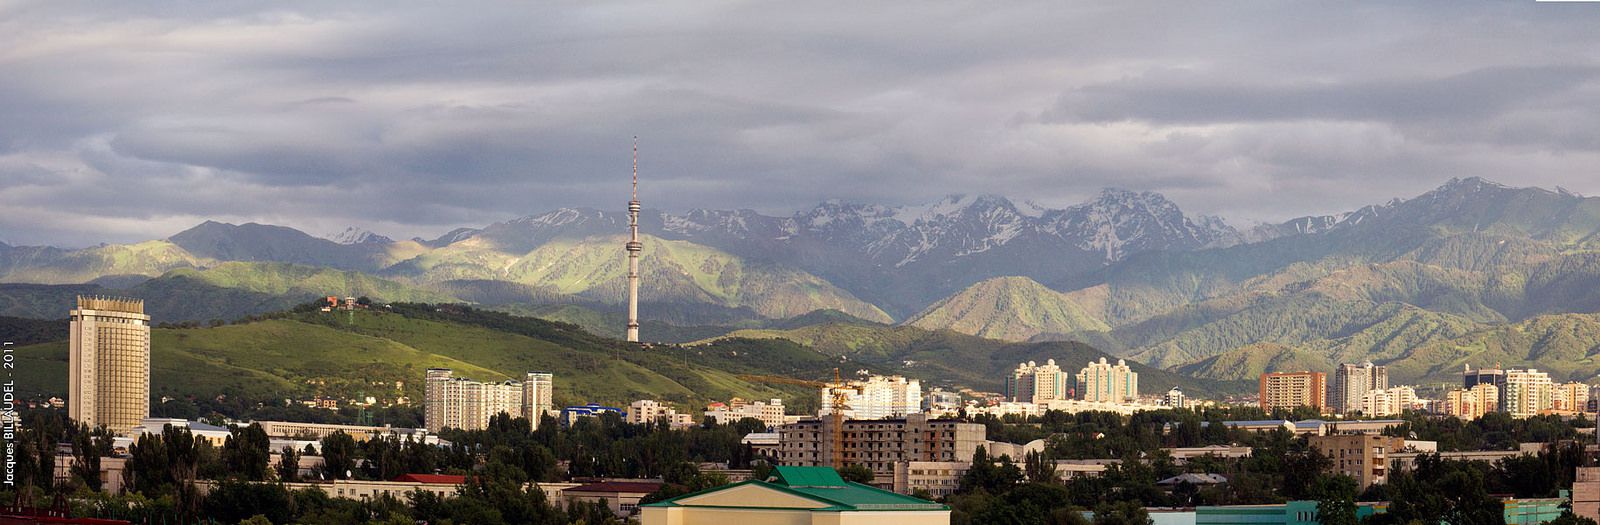 Алма-Ата, Казахстан фото #32974